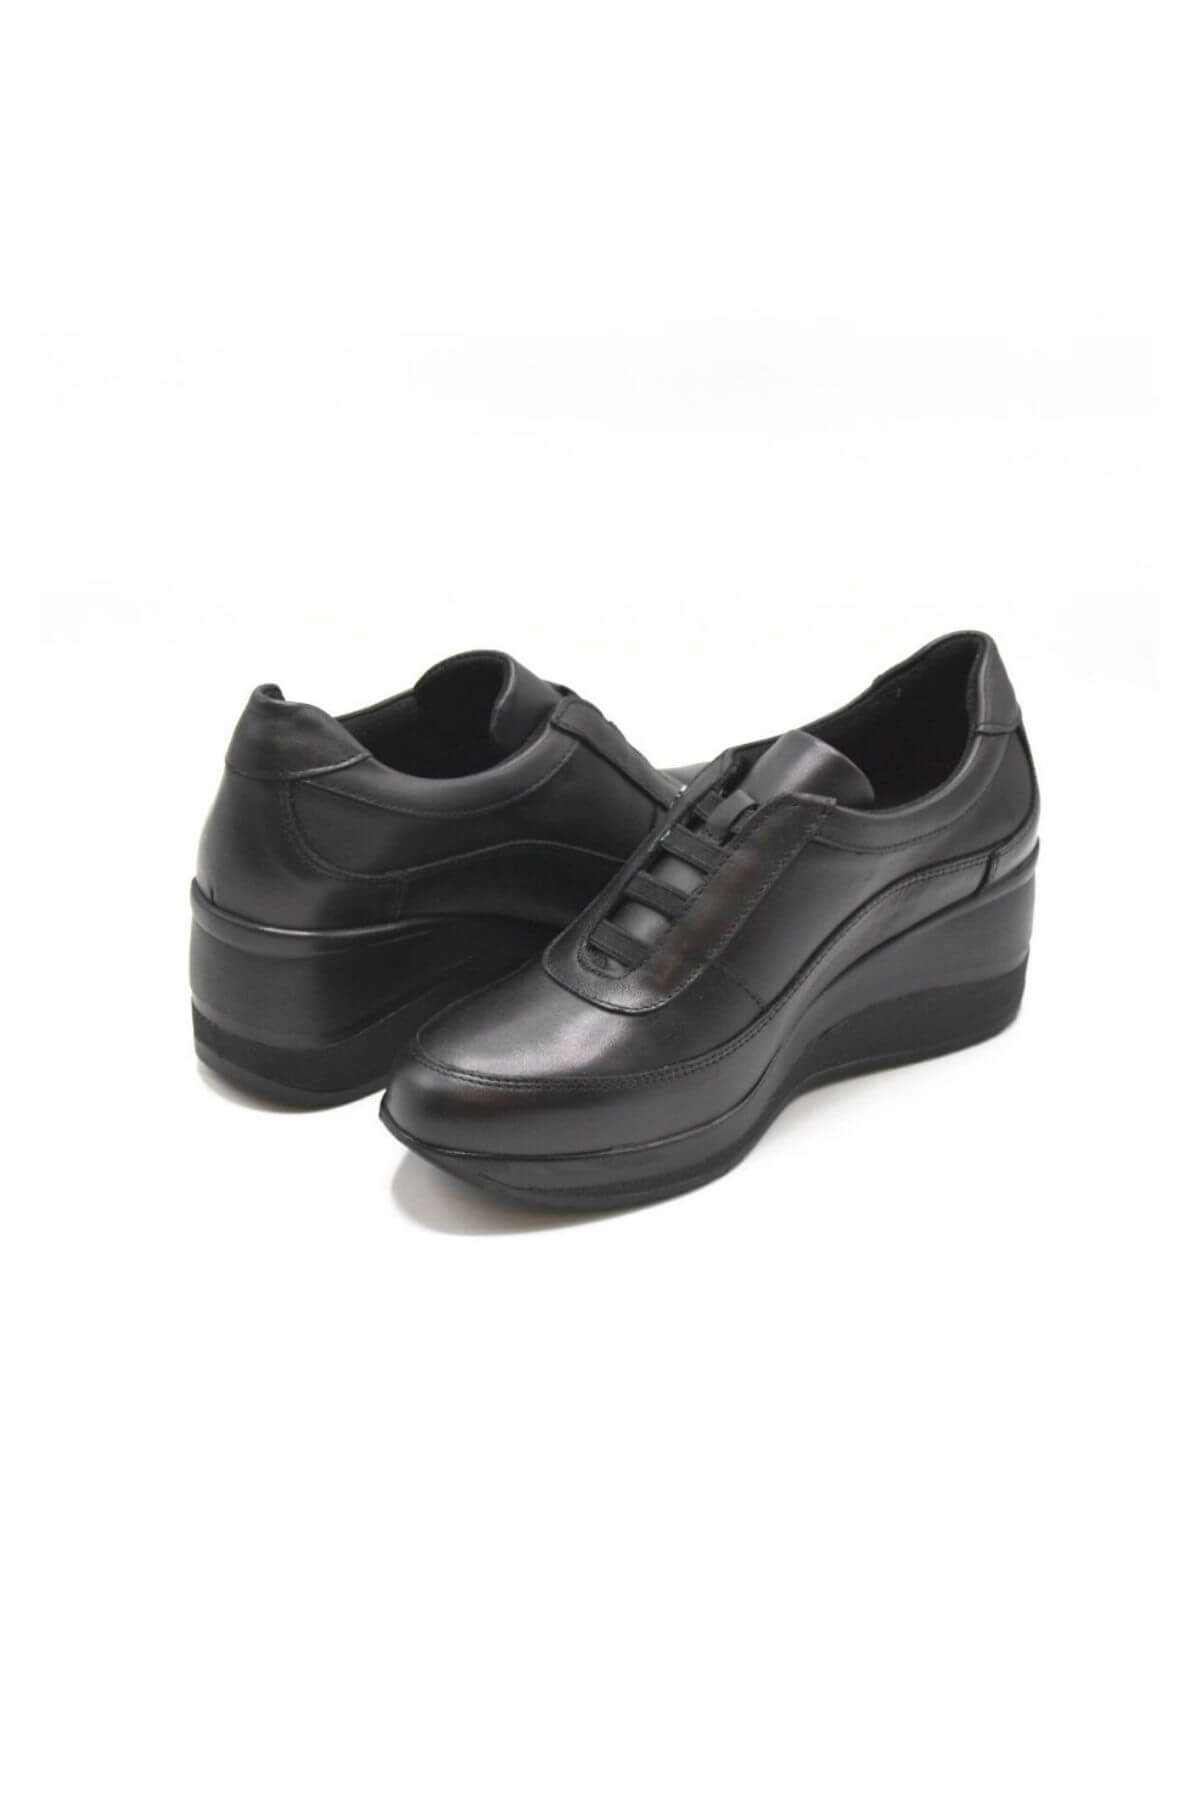 Kadın Dolgu Topuk Deri Ayakkabı Siyah 2111520K